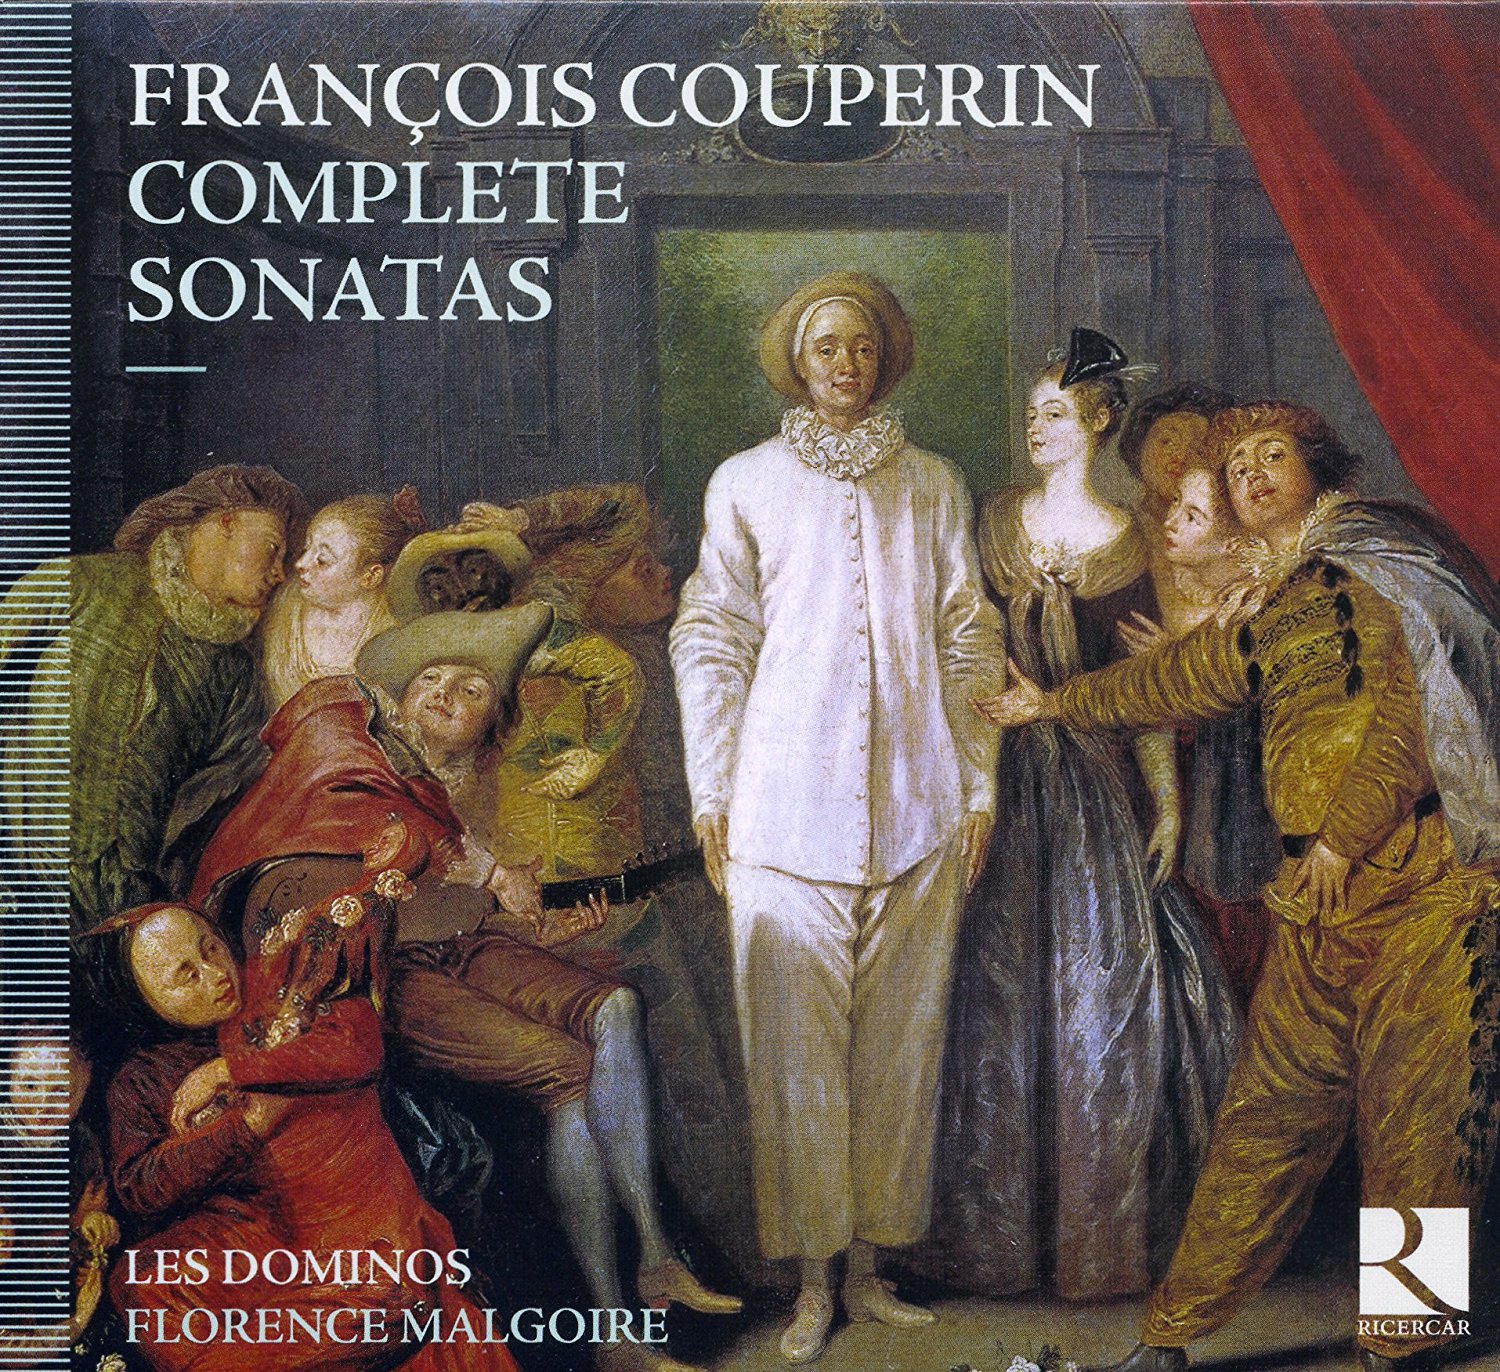 Francois Couperin - Complete Sonatas - Florence Malgoire, Les Dominos (2012) [FLAC 24bit/88,2kHz]